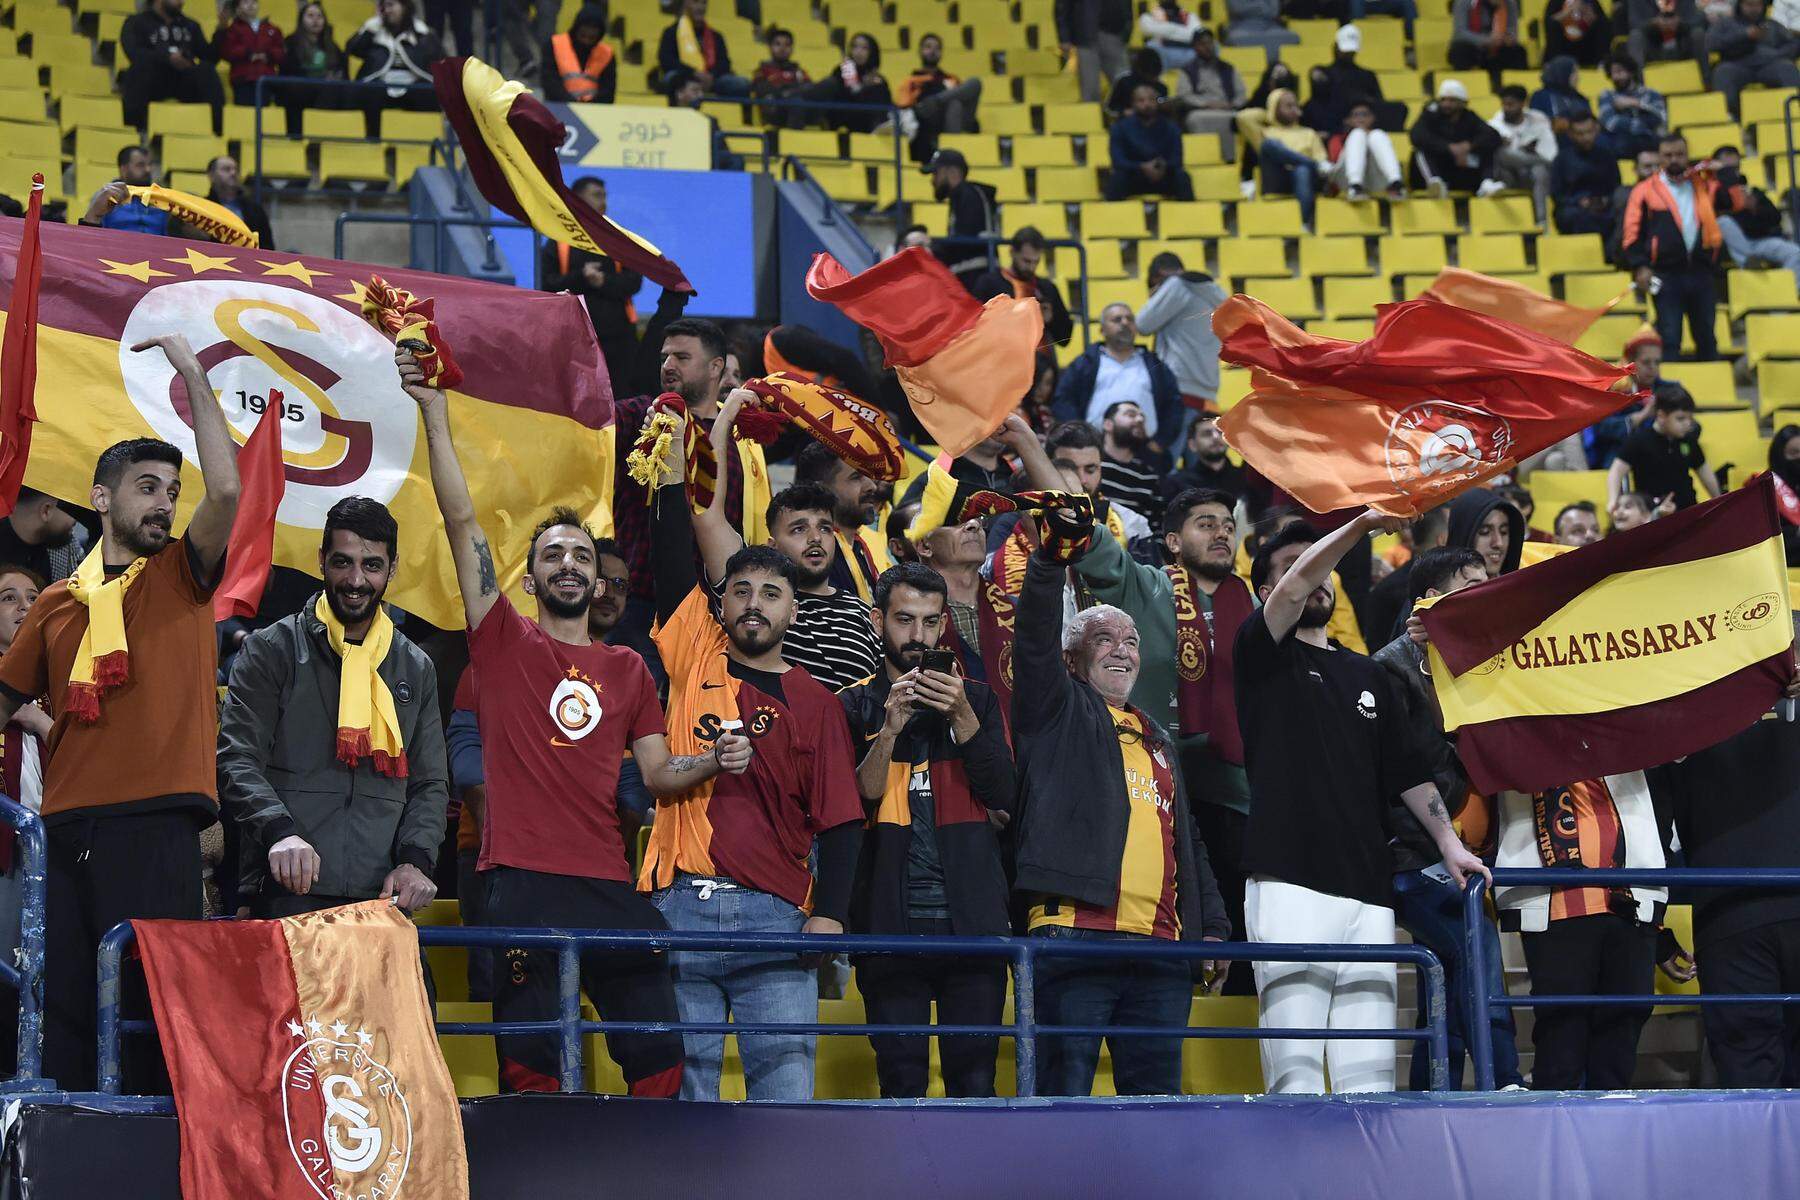 Galatasaray – Fenerbahce | Disput mit saudischen Behörden: Türkisches Supercup-Finale knapp vor Anpfiff abgesagt